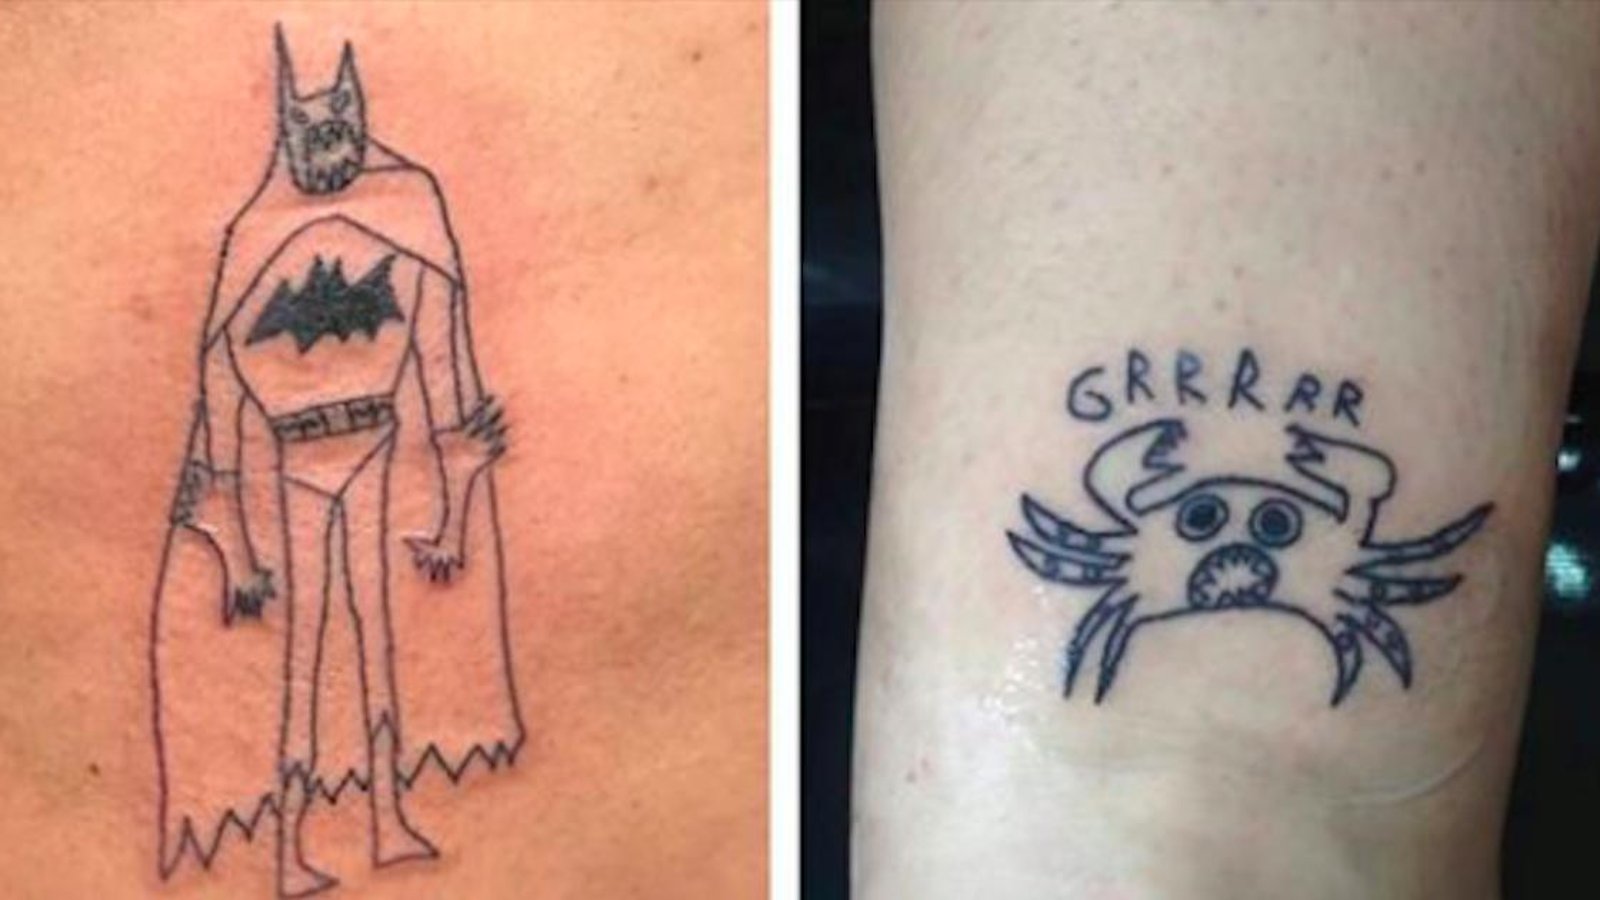 Cette tatoueuse a un léger problème... pourtant, les gens aiment se faire tatouer par elle!